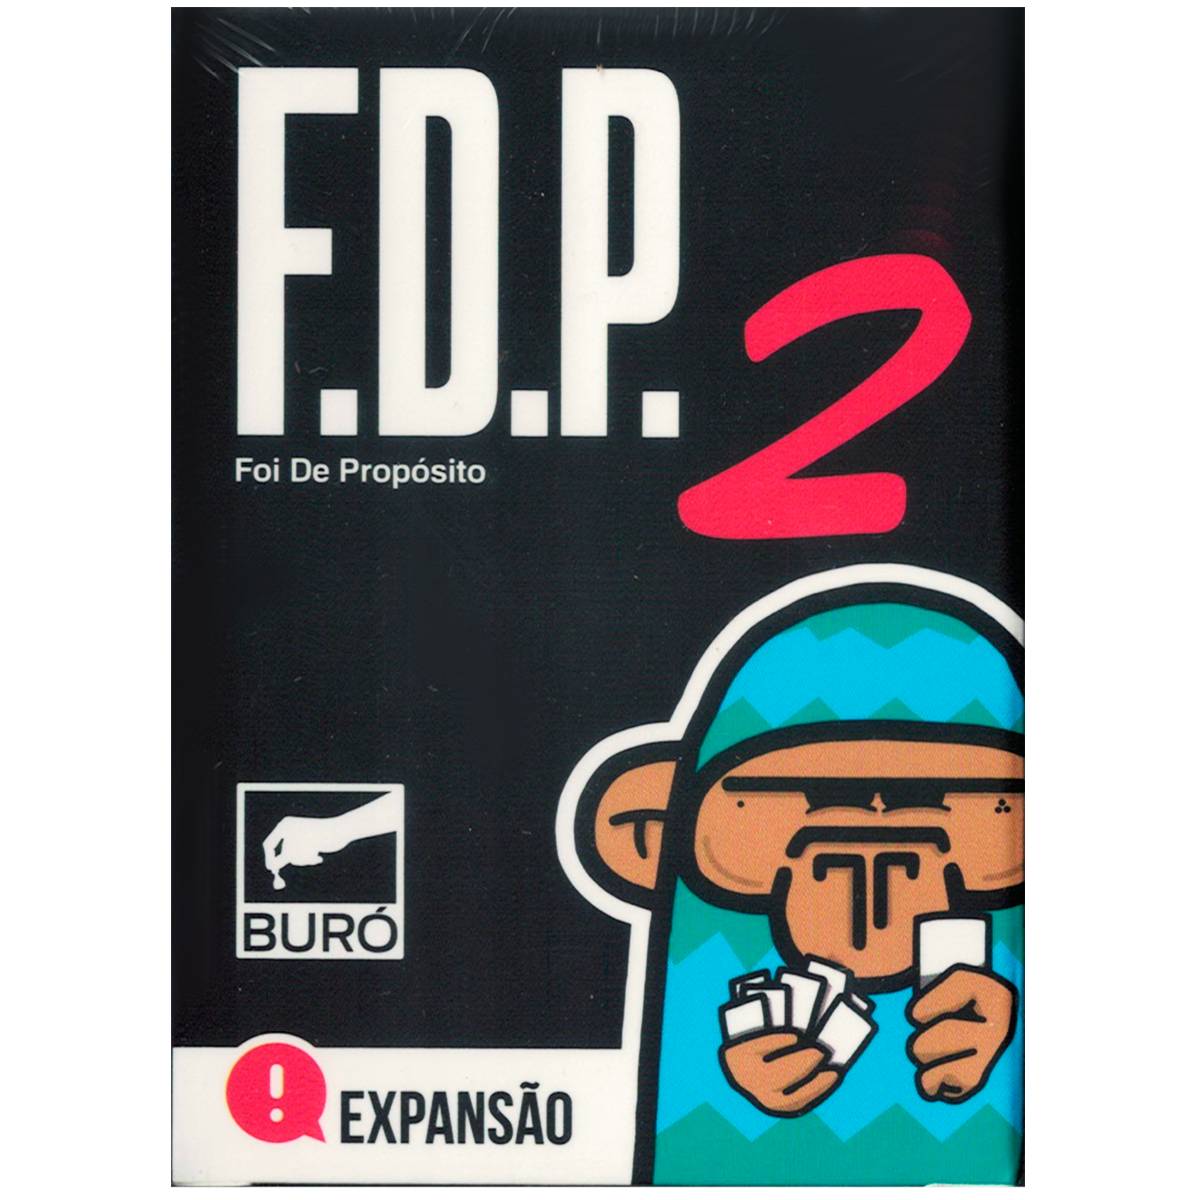 FDP Foi De Propósito 2 Expansão Buró Jogo De Cartas